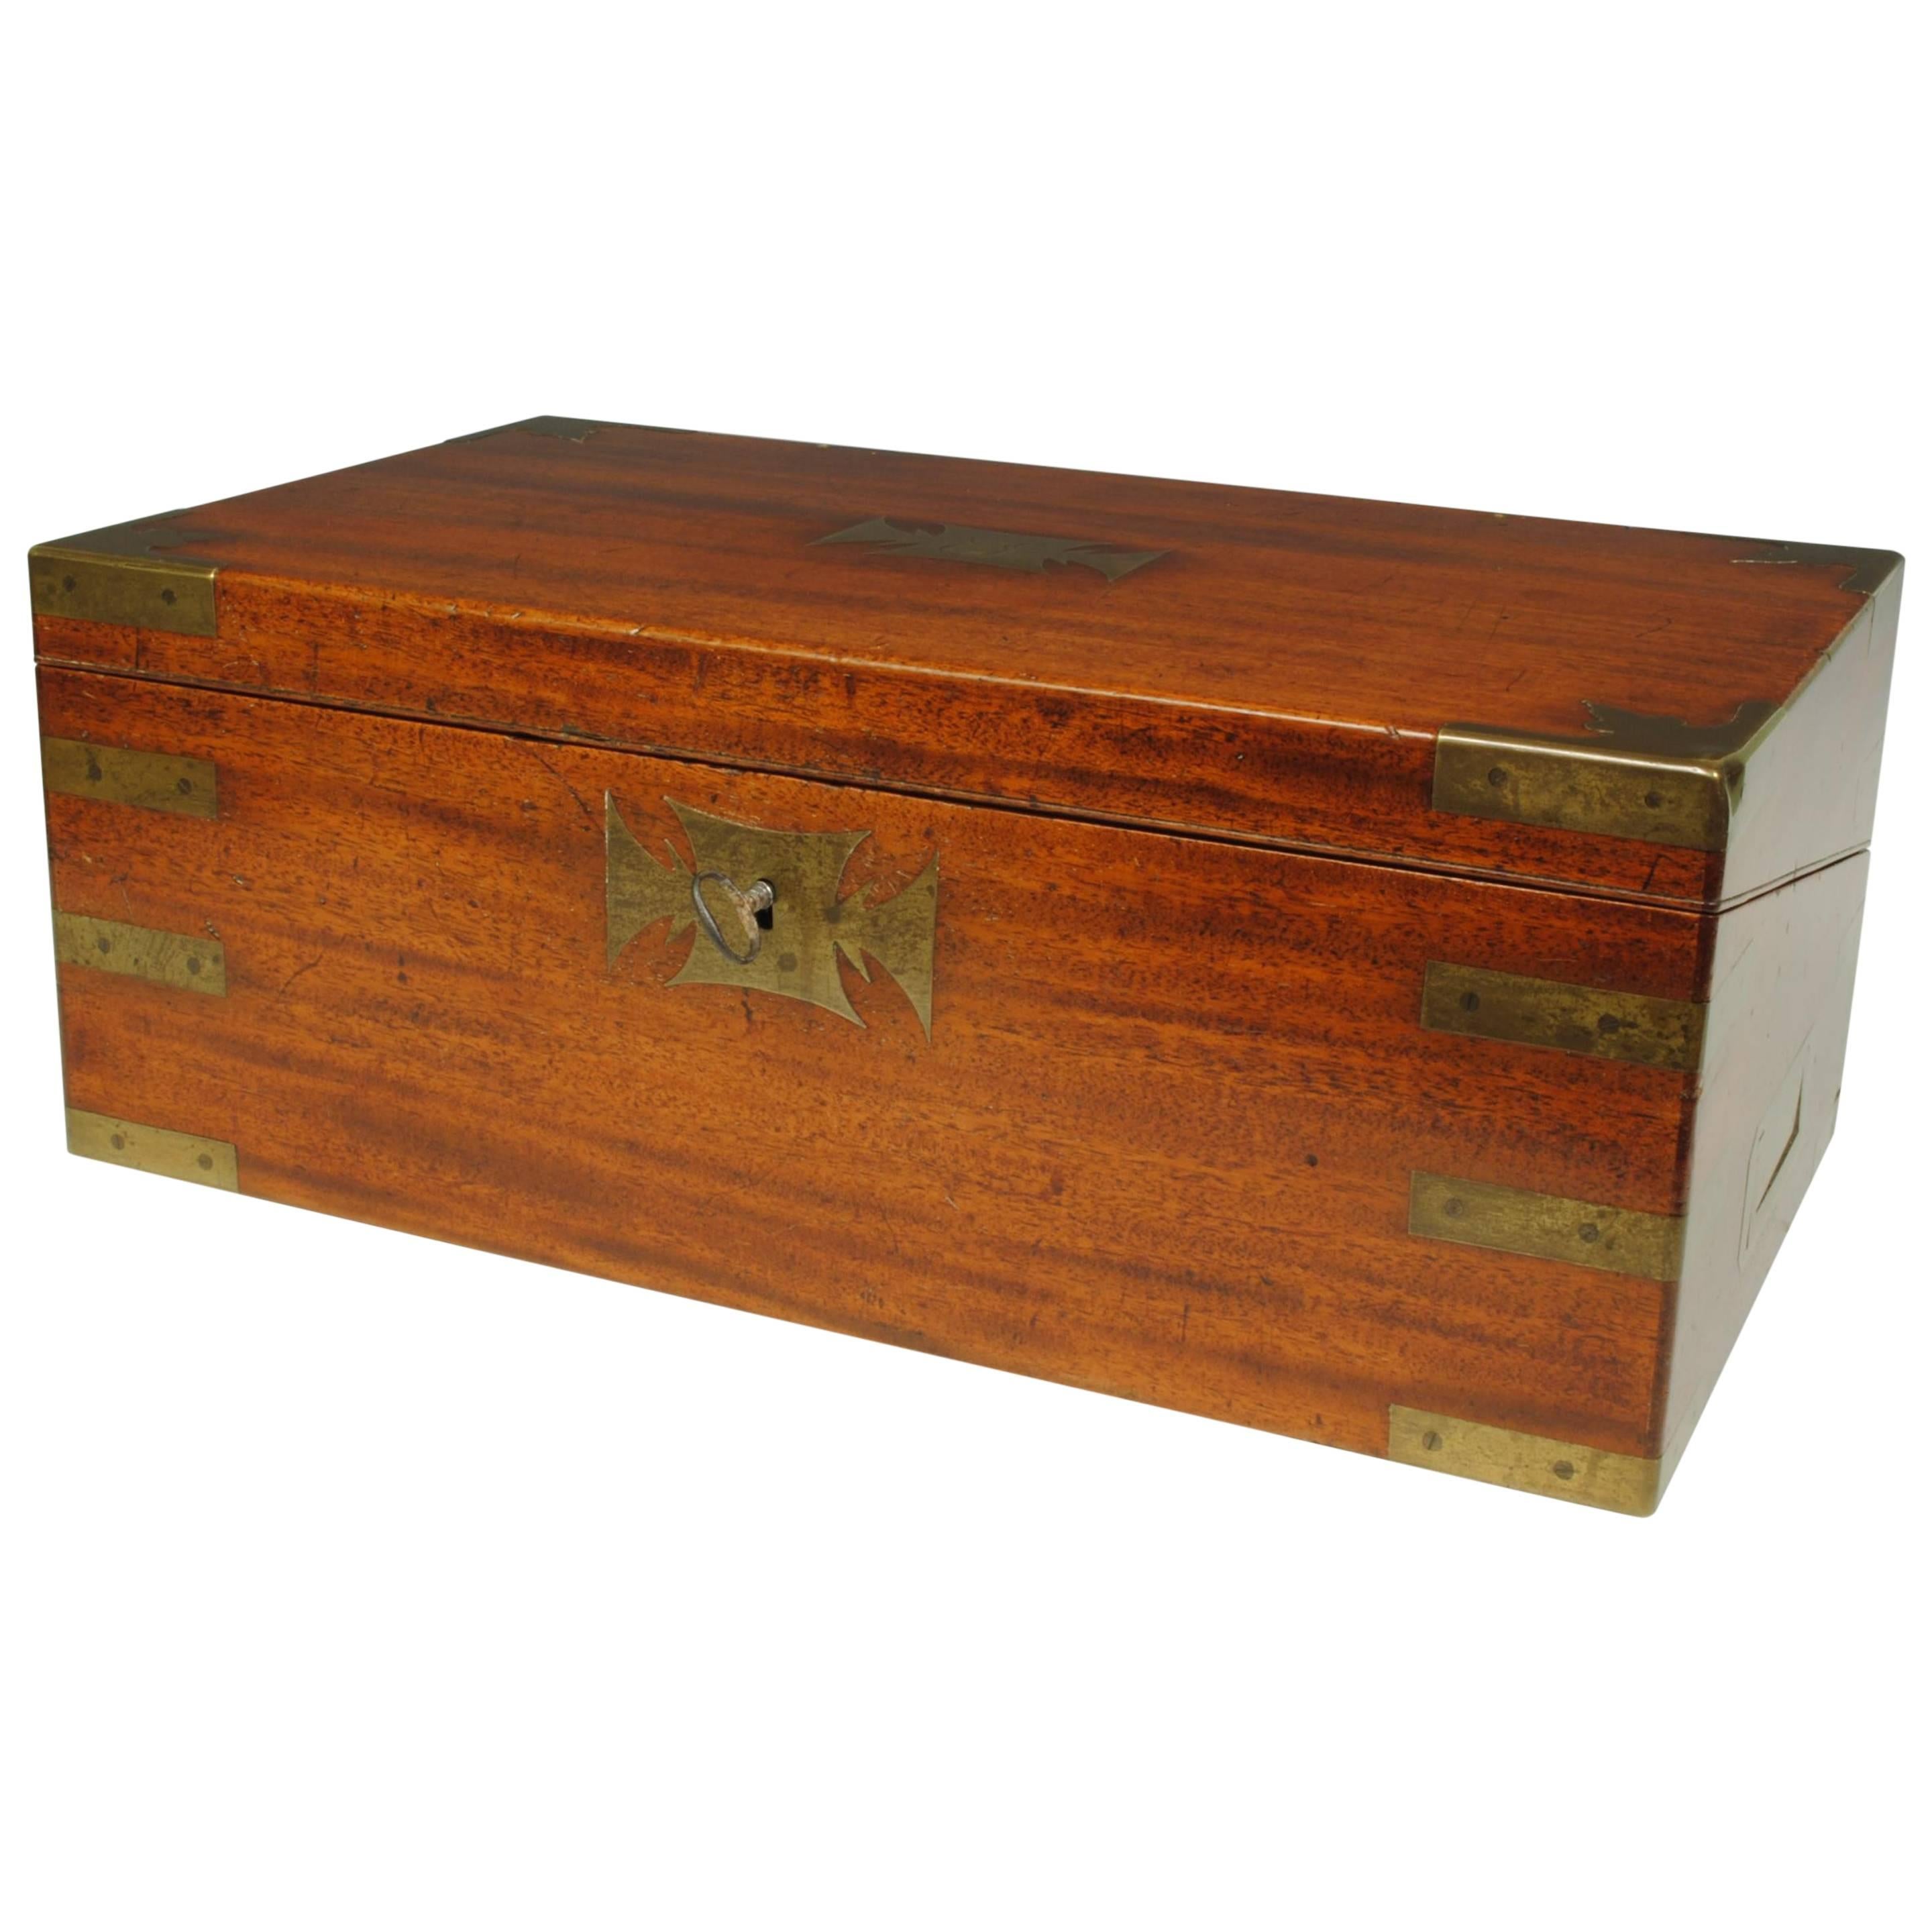 Early 19th Century Mahogany Writing Box